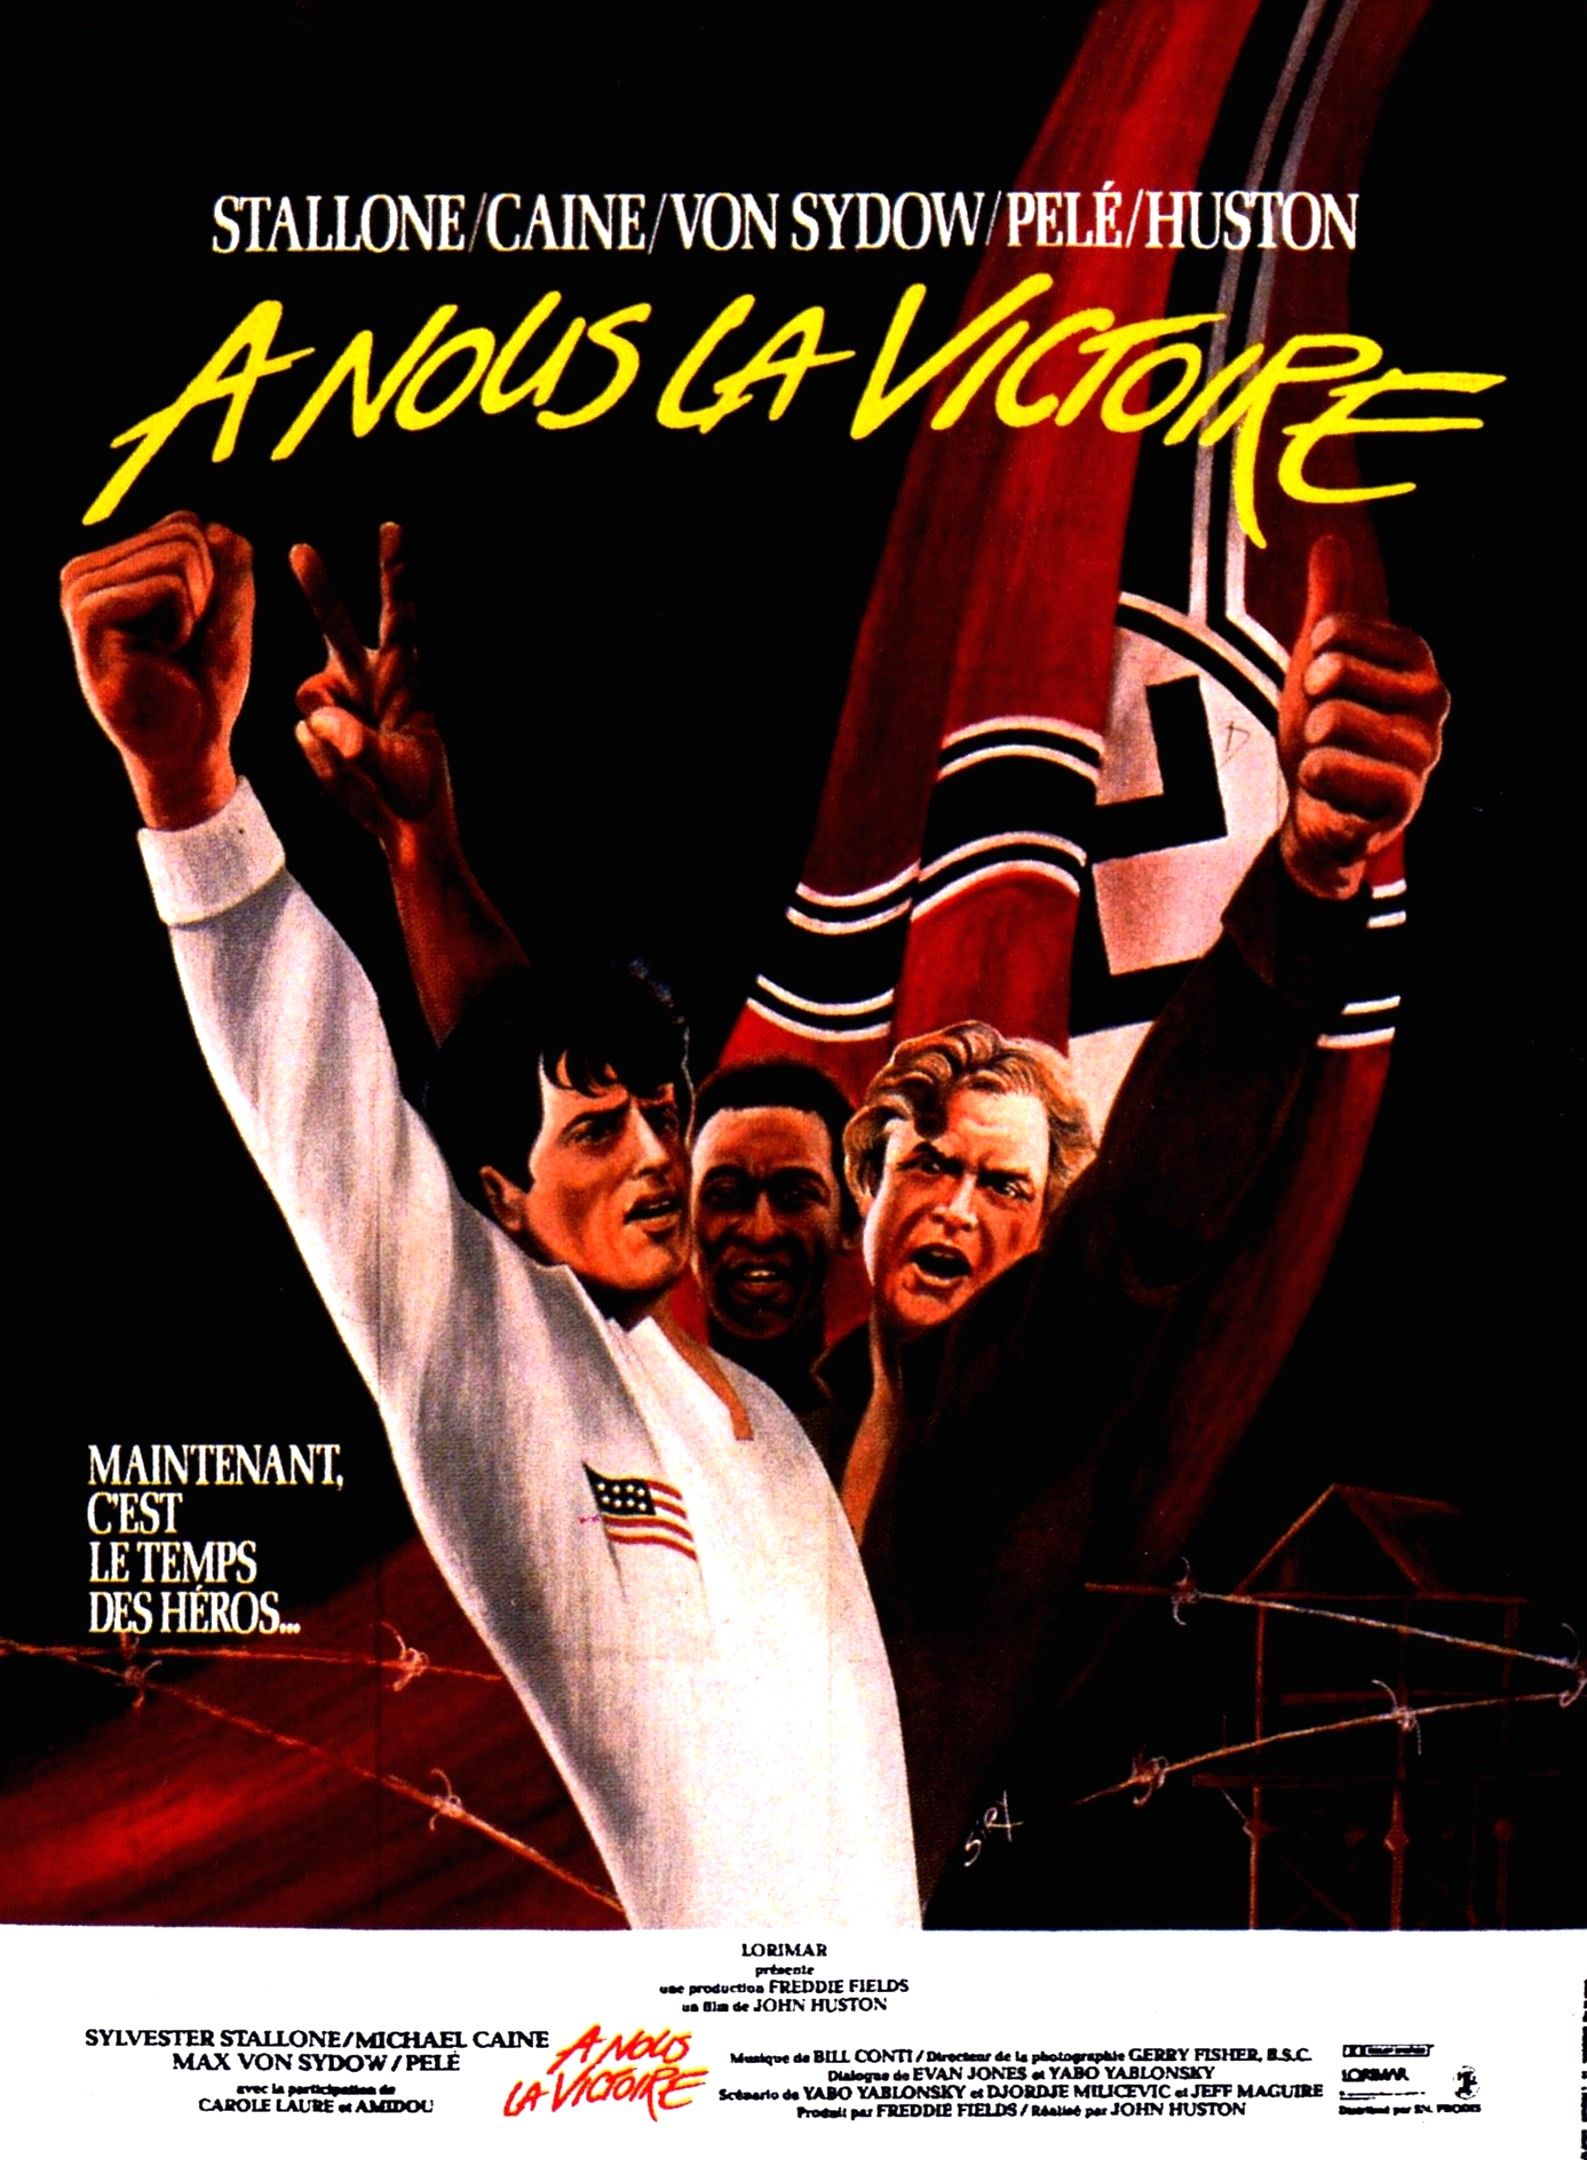  nous la victoire - Film (1981) - SensCritique